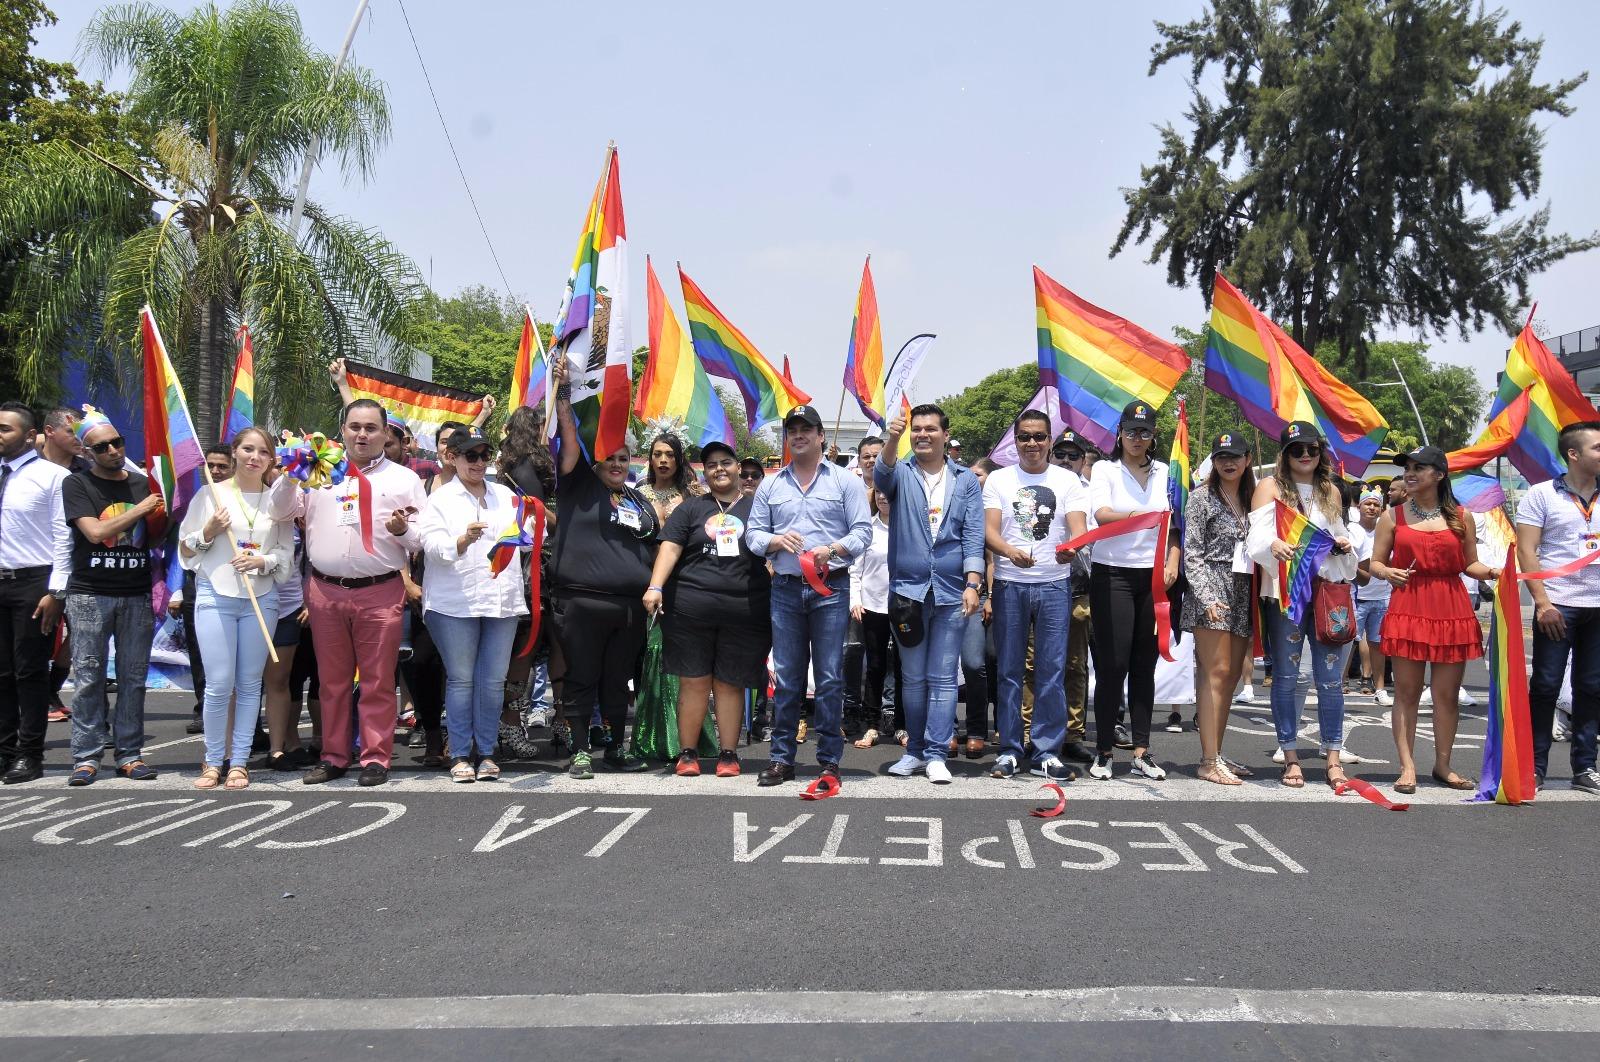 Hay que celebrar el amor sin importar el género: la comunidad LGBT se manifiesta en Jalisco